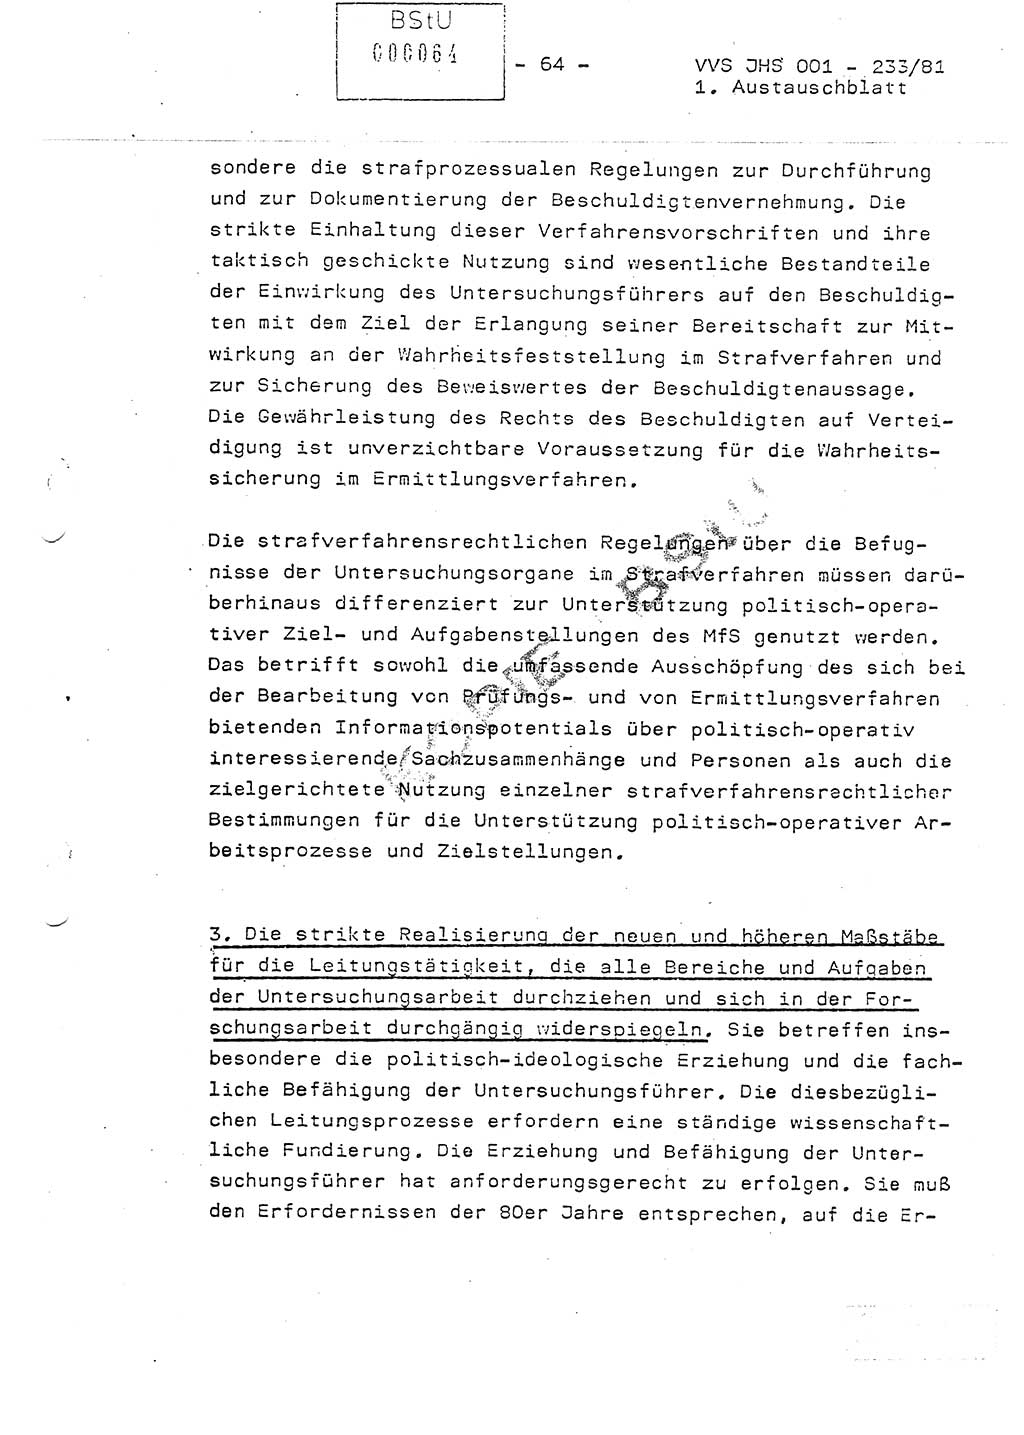 Dissertation Oberstleutnant Horst Zank (JHS), Oberstleutnant Dr. Karl-Heinz Knoblauch (JHS), Oberstleutnant Gustav-Adolf Kowalewski (HA Ⅸ), Oberstleutnant Wolfgang Plötner (HA Ⅸ), Ministerium für Staatssicherheit (MfS) [Deutsche Demokratische Republik (DDR)], Juristische Hochschule (JHS), Vertrauliche Verschlußsache (VVS) o001-233/81, Potsdam 1981, Blatt 64 (Diss. MfS DDR JHS VVS o001-233/81 1981, Bl. 64)